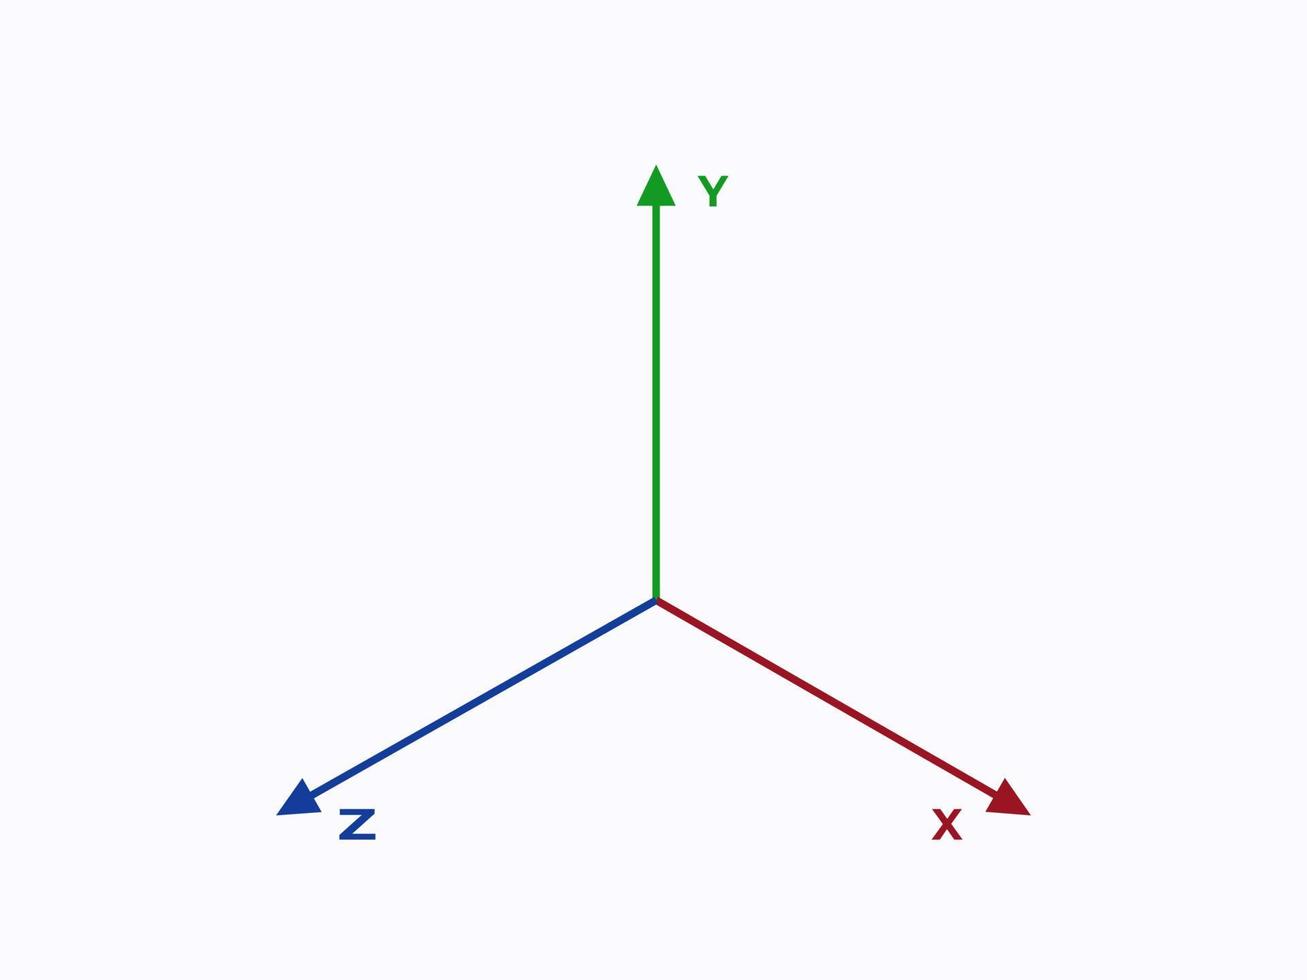 eixos de coordenadas. escala cartesiana verde geométrica com sistema analítico azul em planos vetoriais horizontais e verticais do diagrama vermelho xyz. vetor